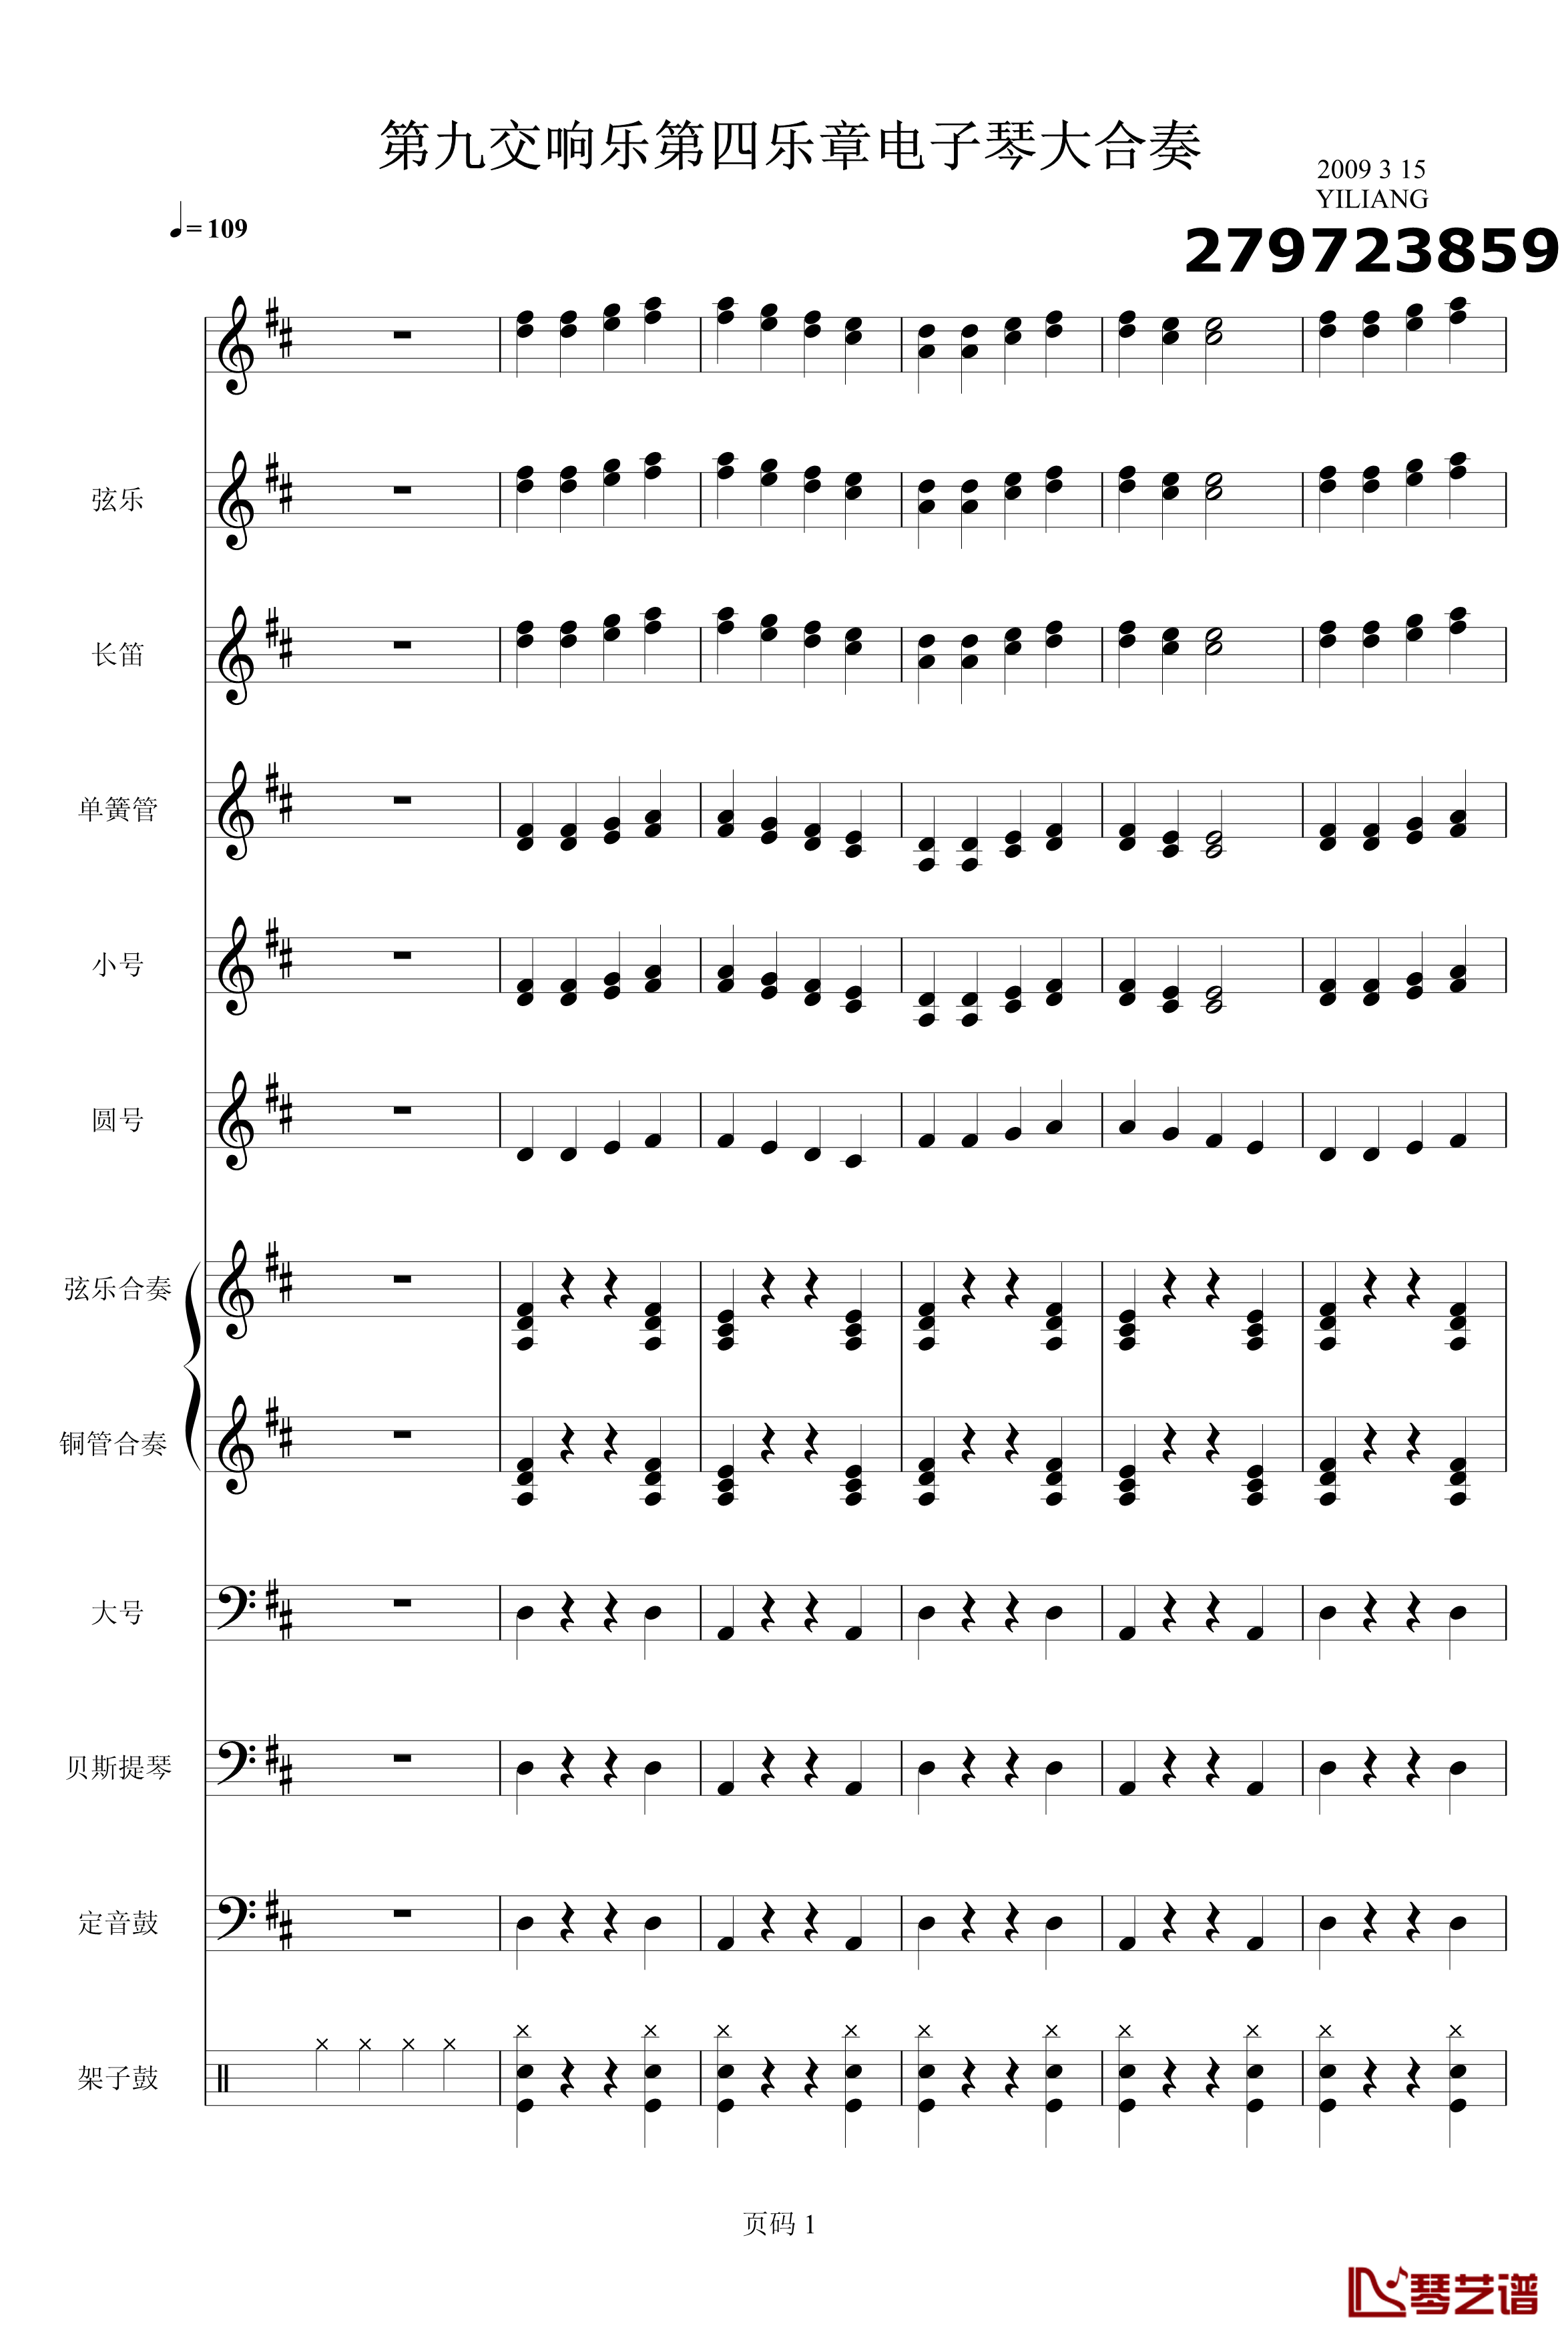 欢乐颂电子琴合奏钢琴谱-贝多芬-beethoven1